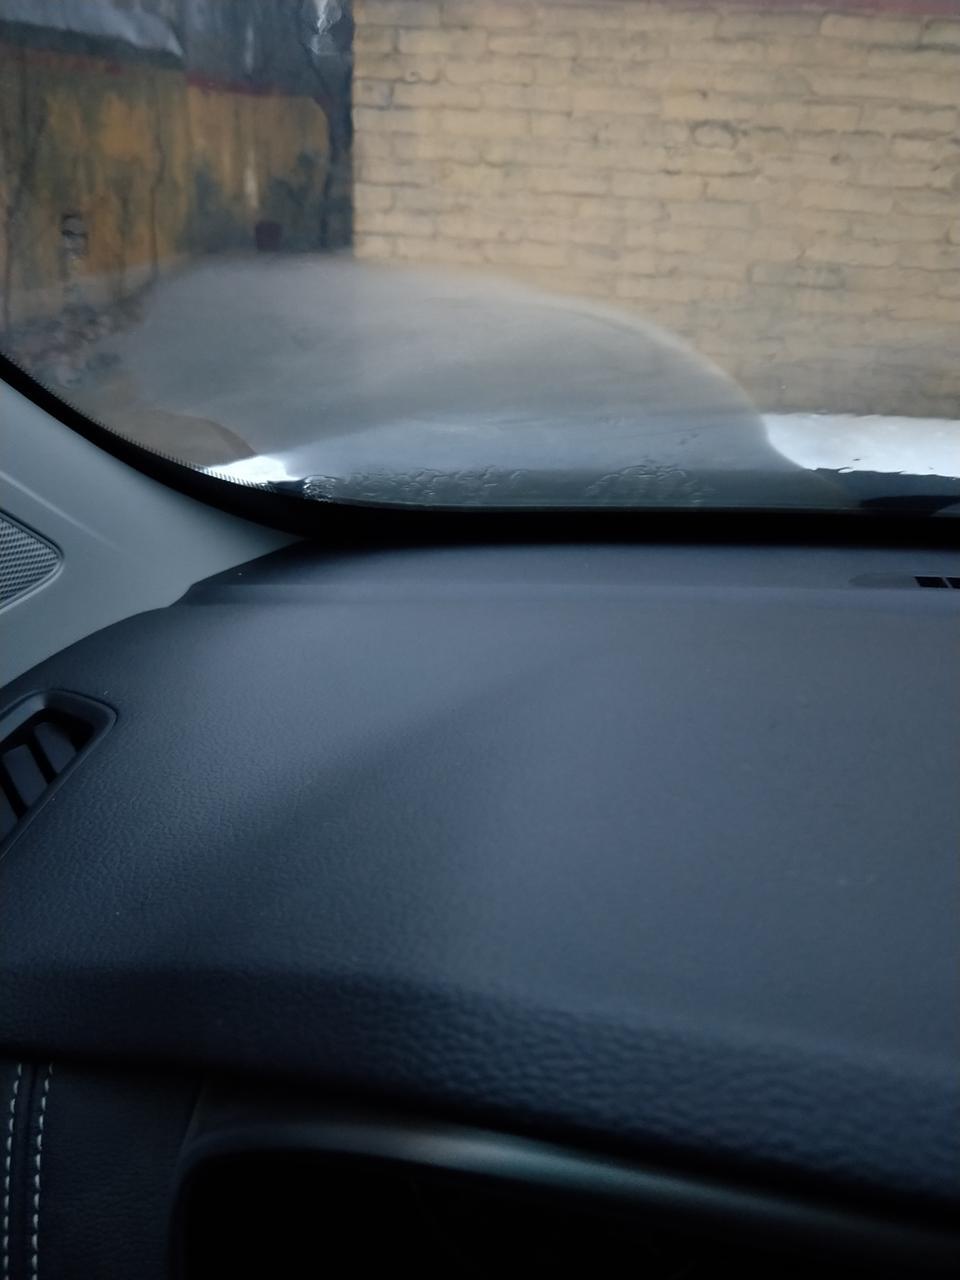 荣威rx5圈友们主驾侧前挡玻璃左边的雾气怎么消除不了？开空调也不行。这是忘么回事？